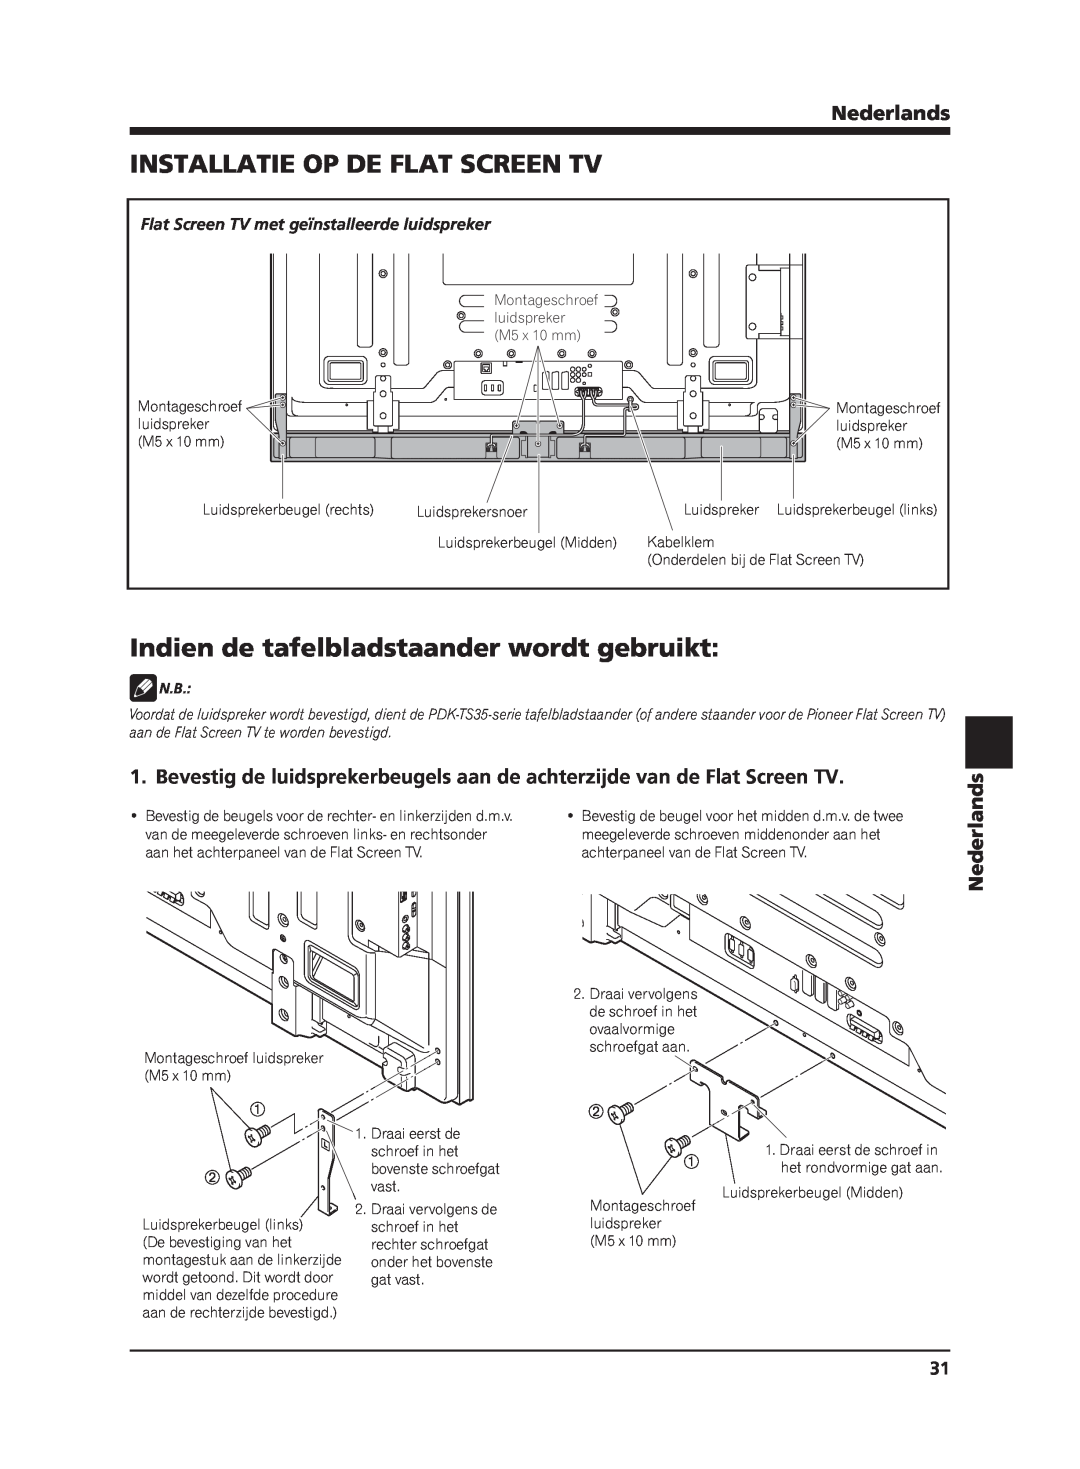 Pioneer PDP-S65 manual Installatie Op De Flat Screen Tv, Indien de tafelbladstaander wordt gebruikt, Nederlands 